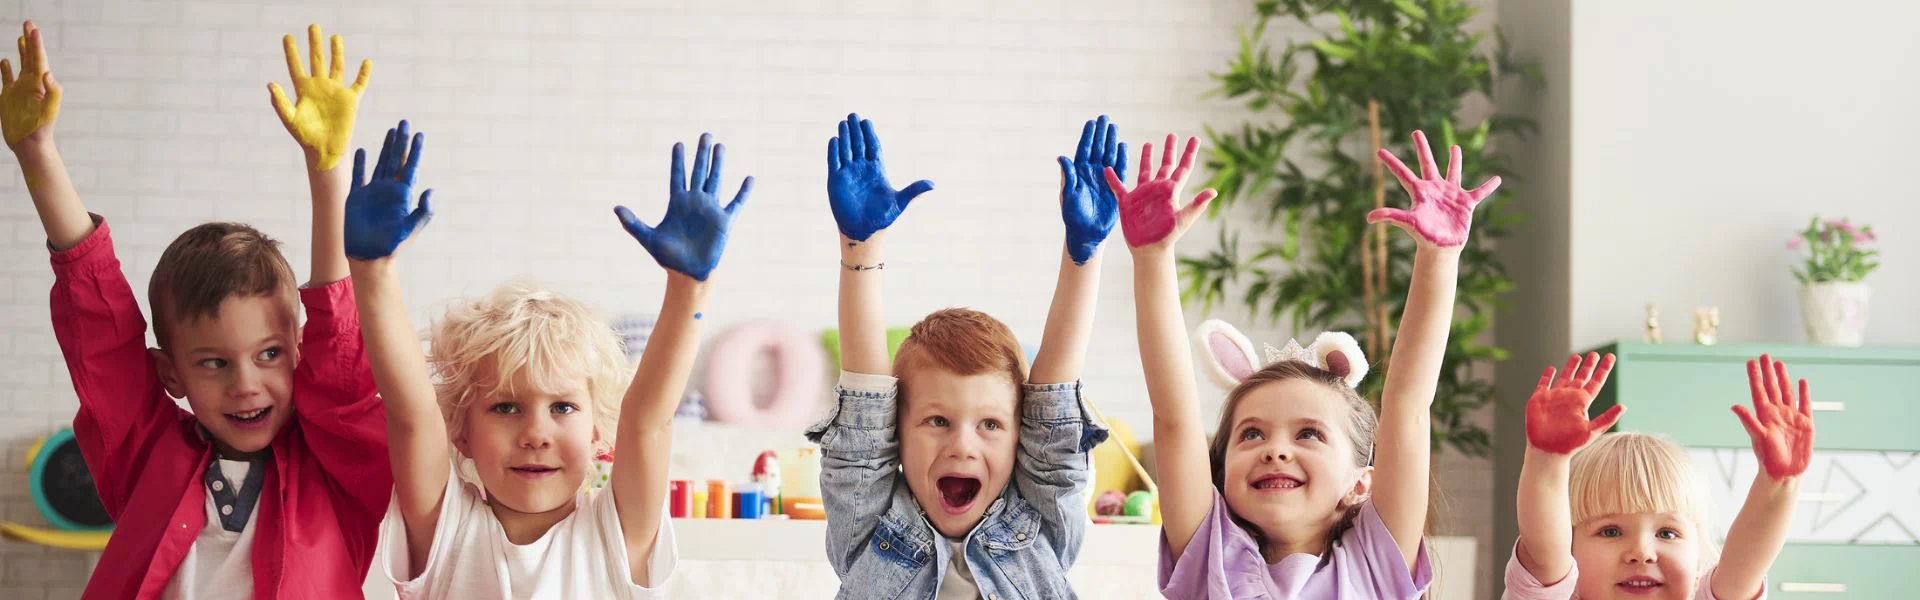 dzieci z pomalowanymi dłońmi